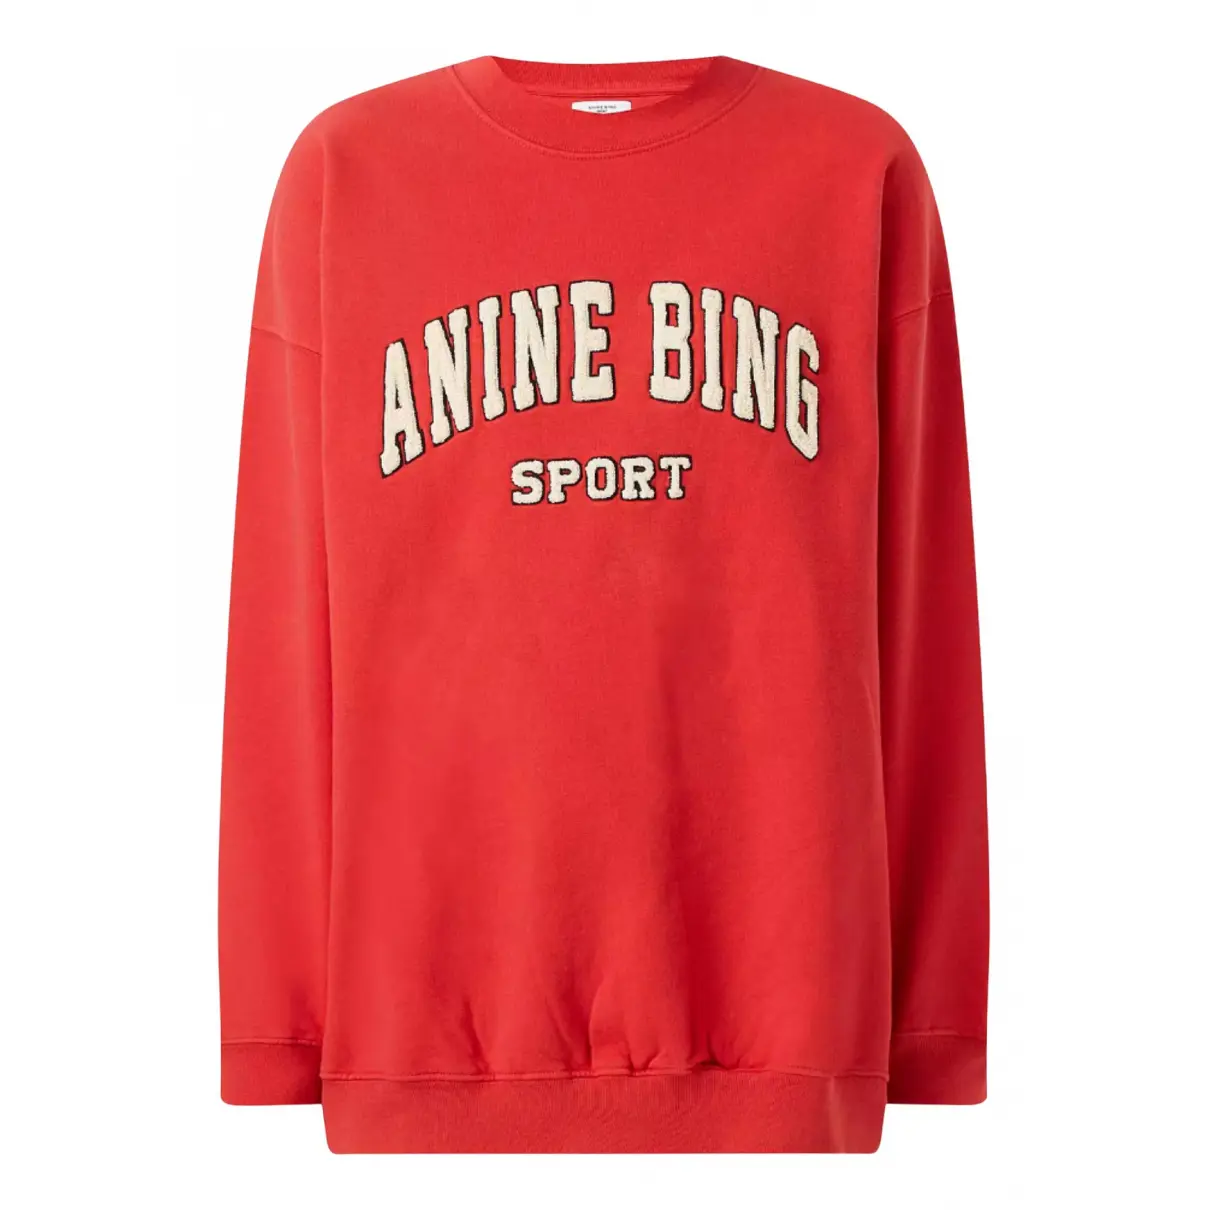 Sweatshirt Anine Bing